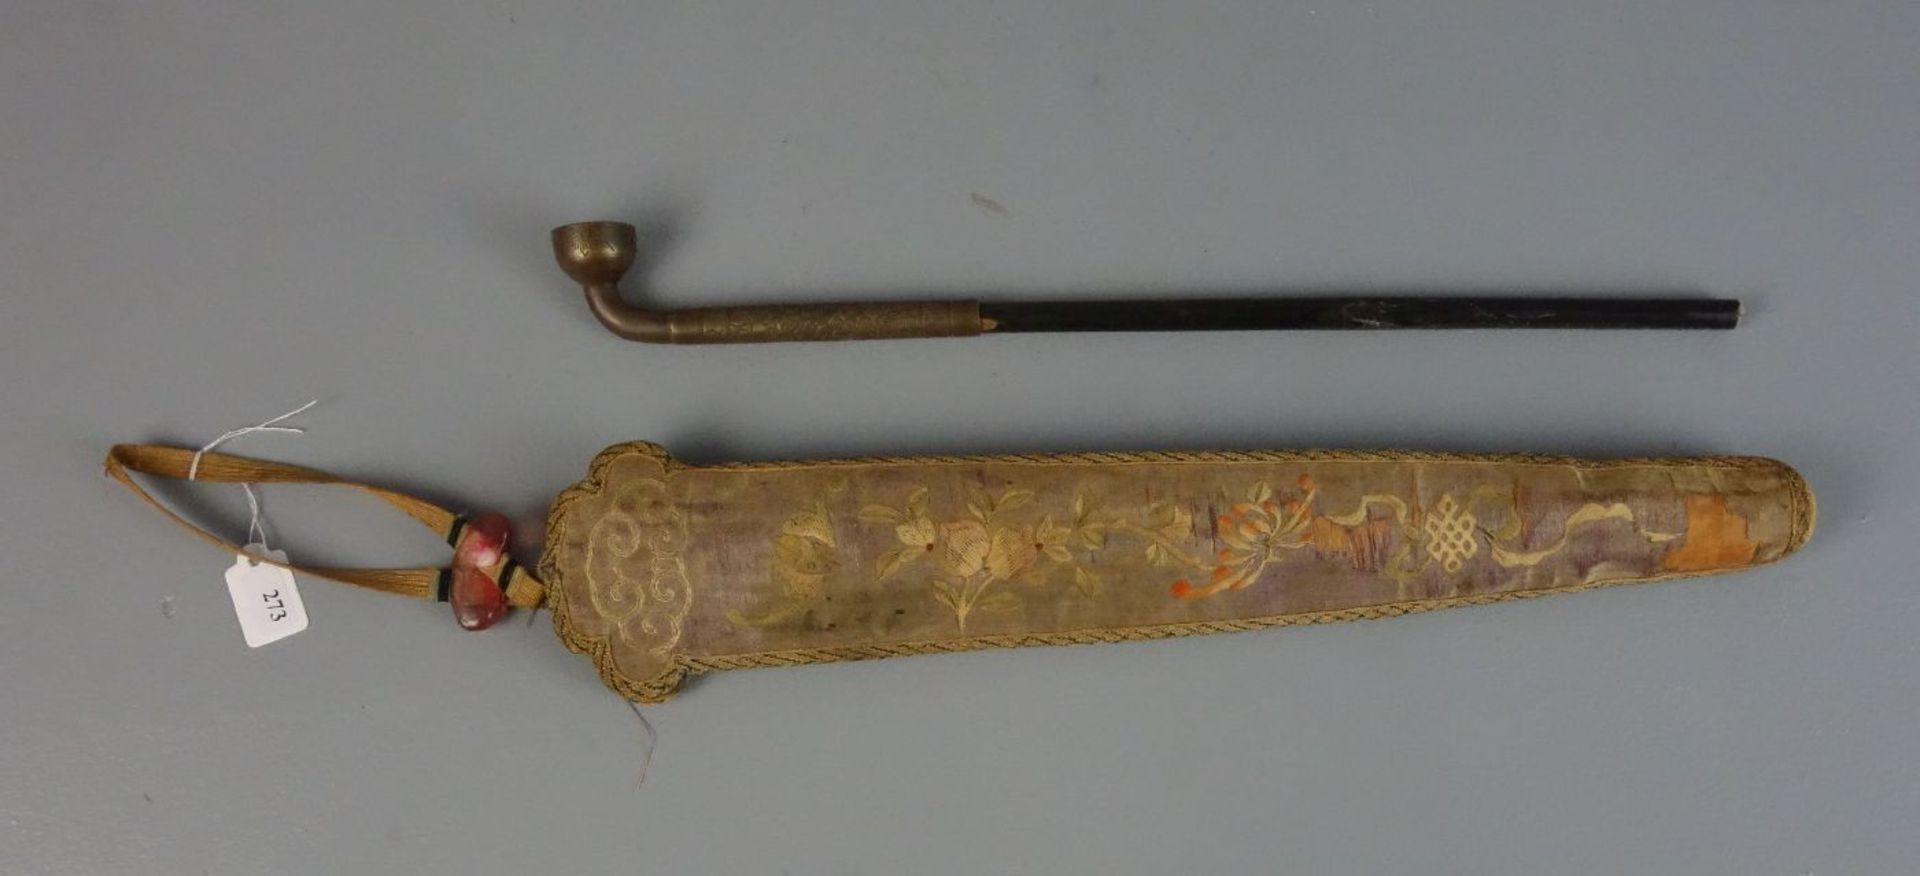 OPIUMPFEIFE MIT FUTTERAL / TRAGEVORRICHTUNG, späte Qing - Dynastie, Ende 19. Jh., Bronze,